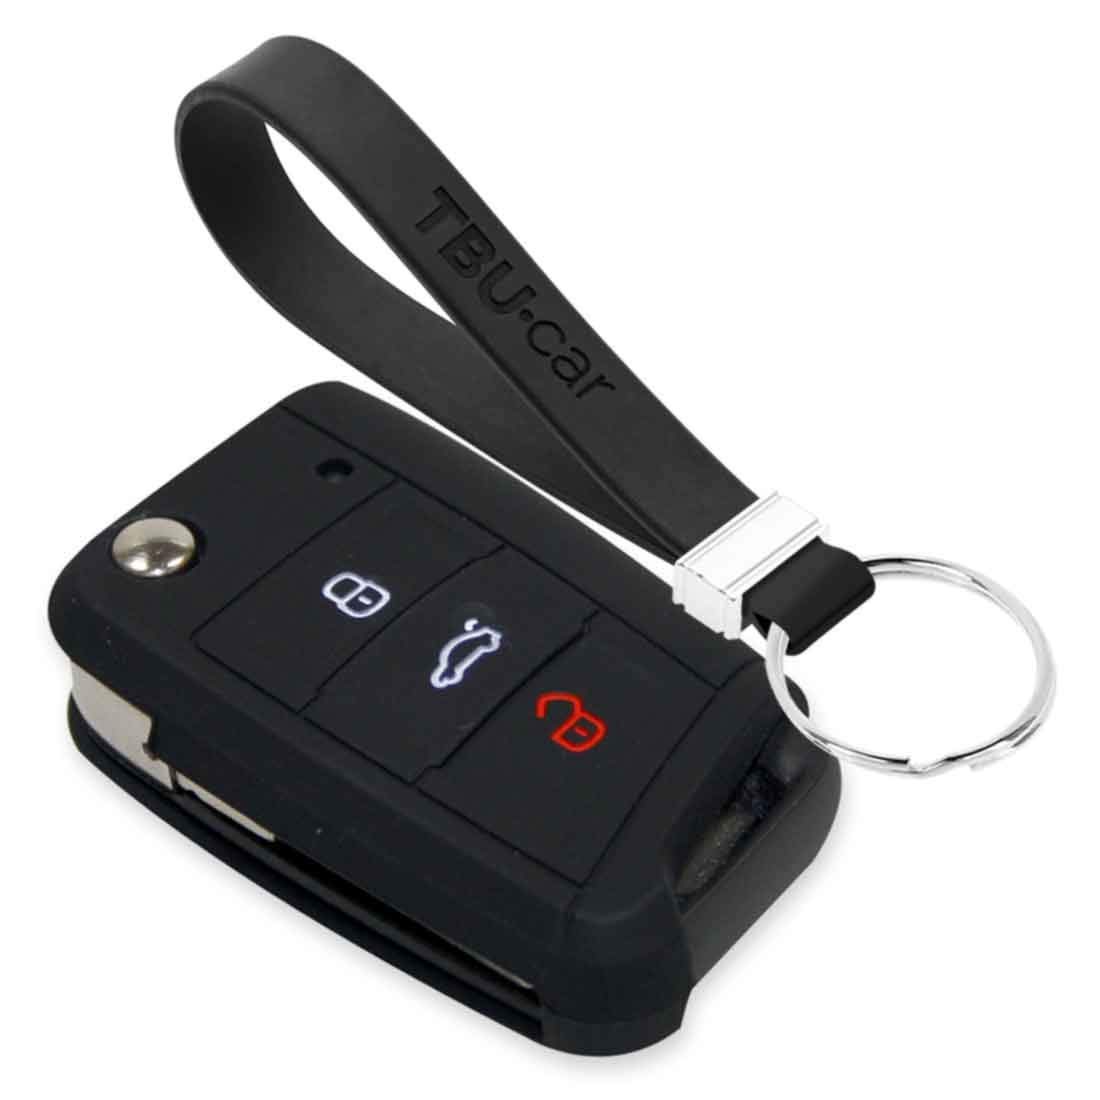 TBU car Autoschlüssel Hülle kompatibel mit VW 3 Tasten - Schutzhülle aus Silikon - Auto Schlüsselhülle Cover in Schwarz von TBU car